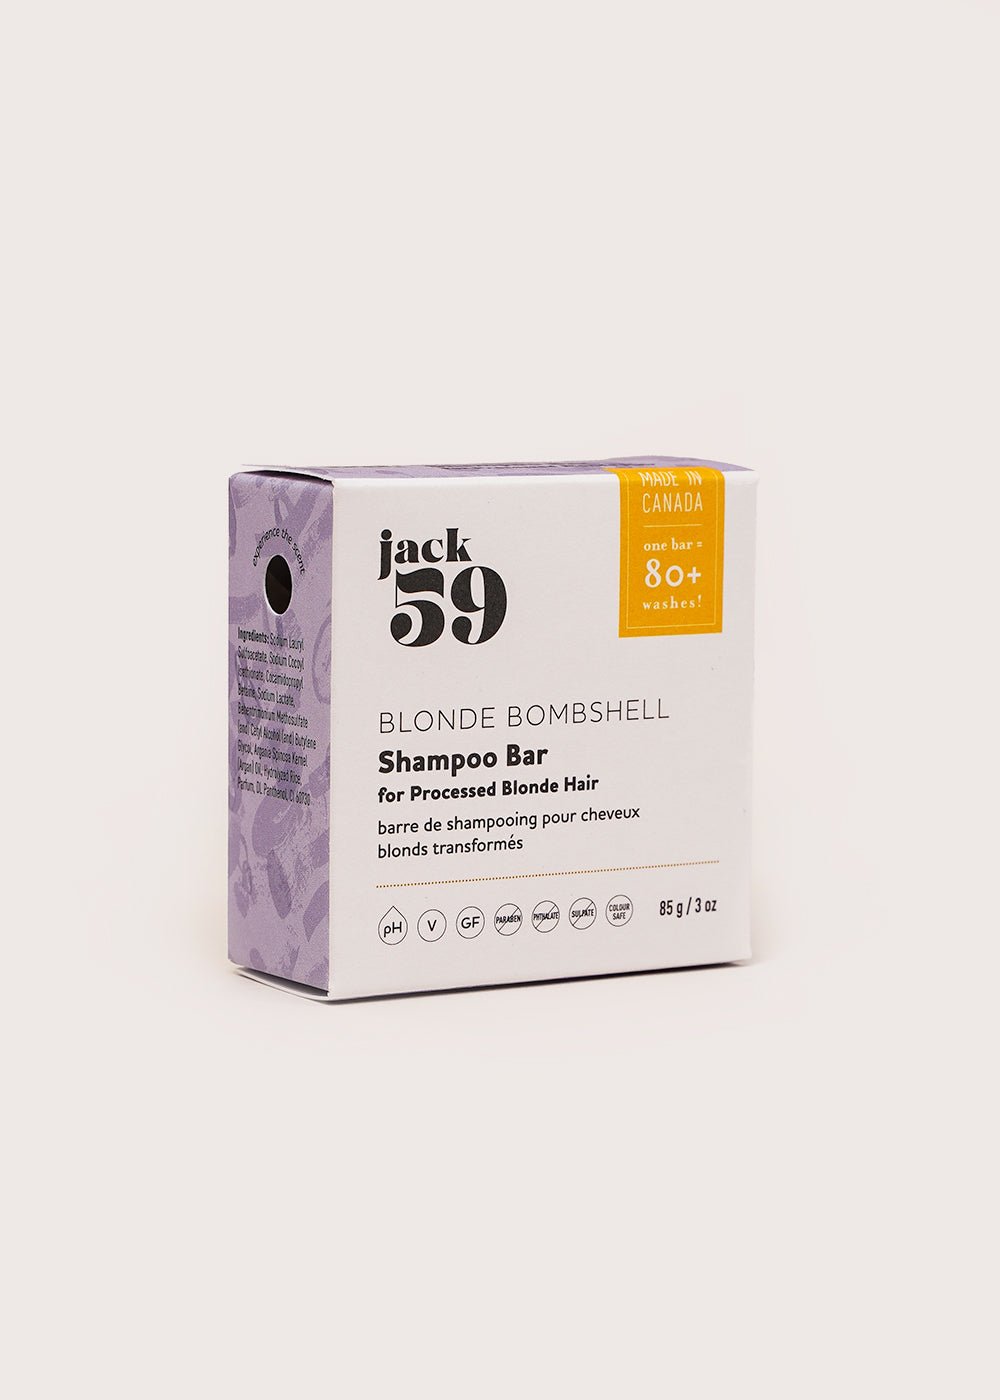 Jack59 Blonde Bombshell Shampoo Bar - New Classics Studios Sustainable Ethical Fashion Canada